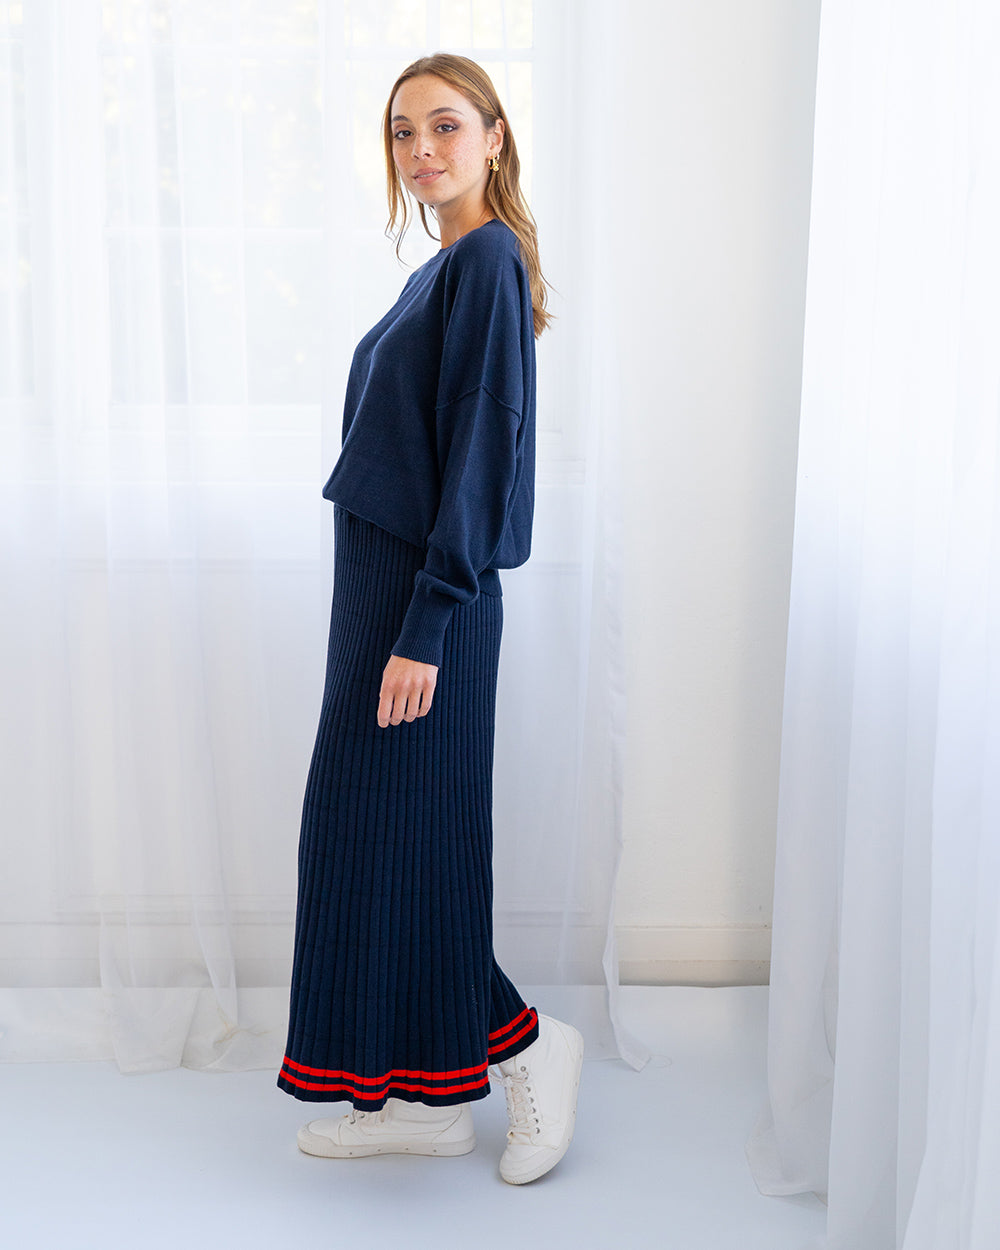 Rebecca Knit Skirt - Navy/Poppy